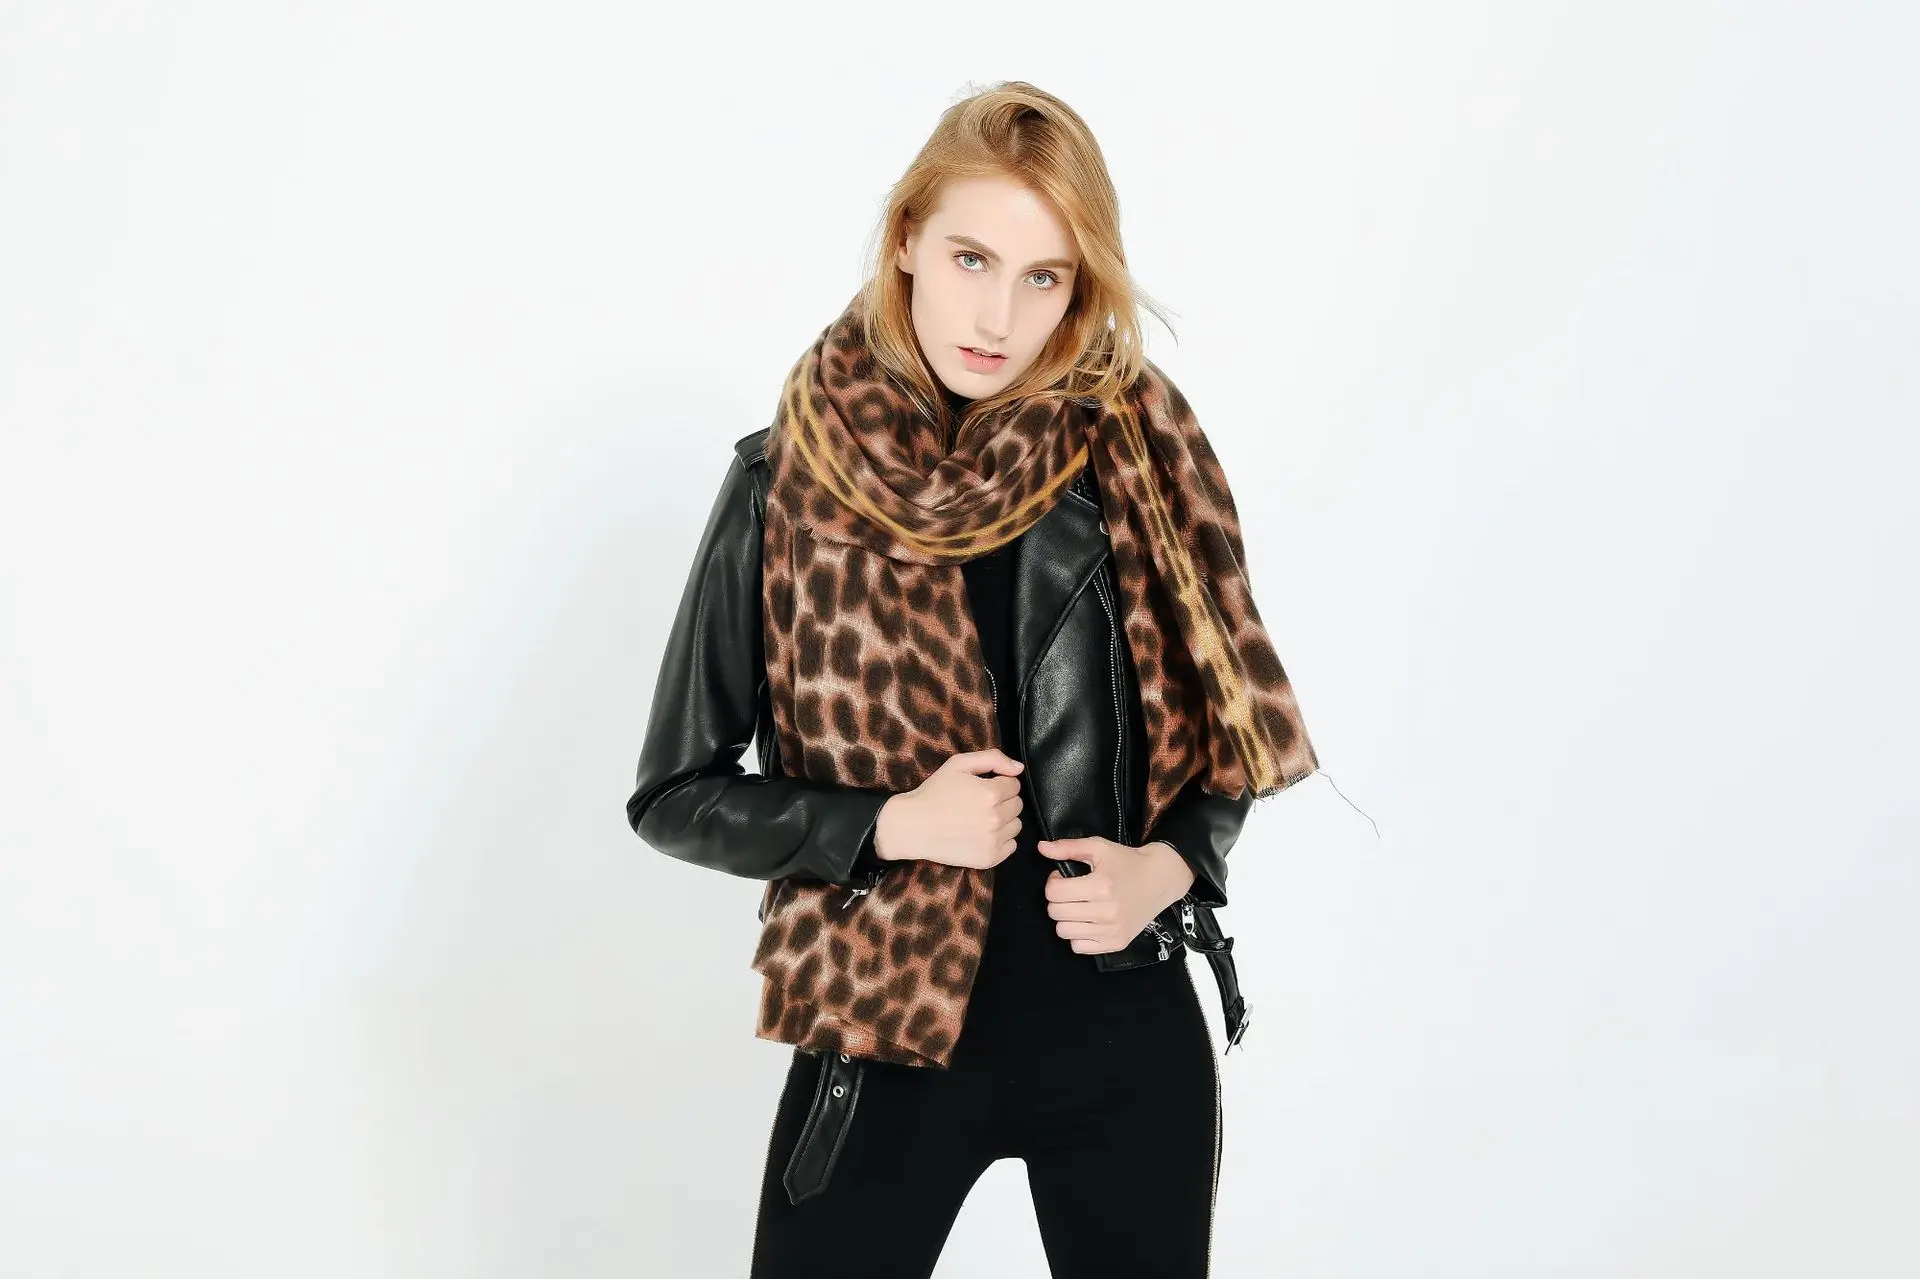 Европа и США на осень и зиму, верхняя одежда с имитацией леопардового кашемировая теплая Дамский шарф шаль двойного назначения